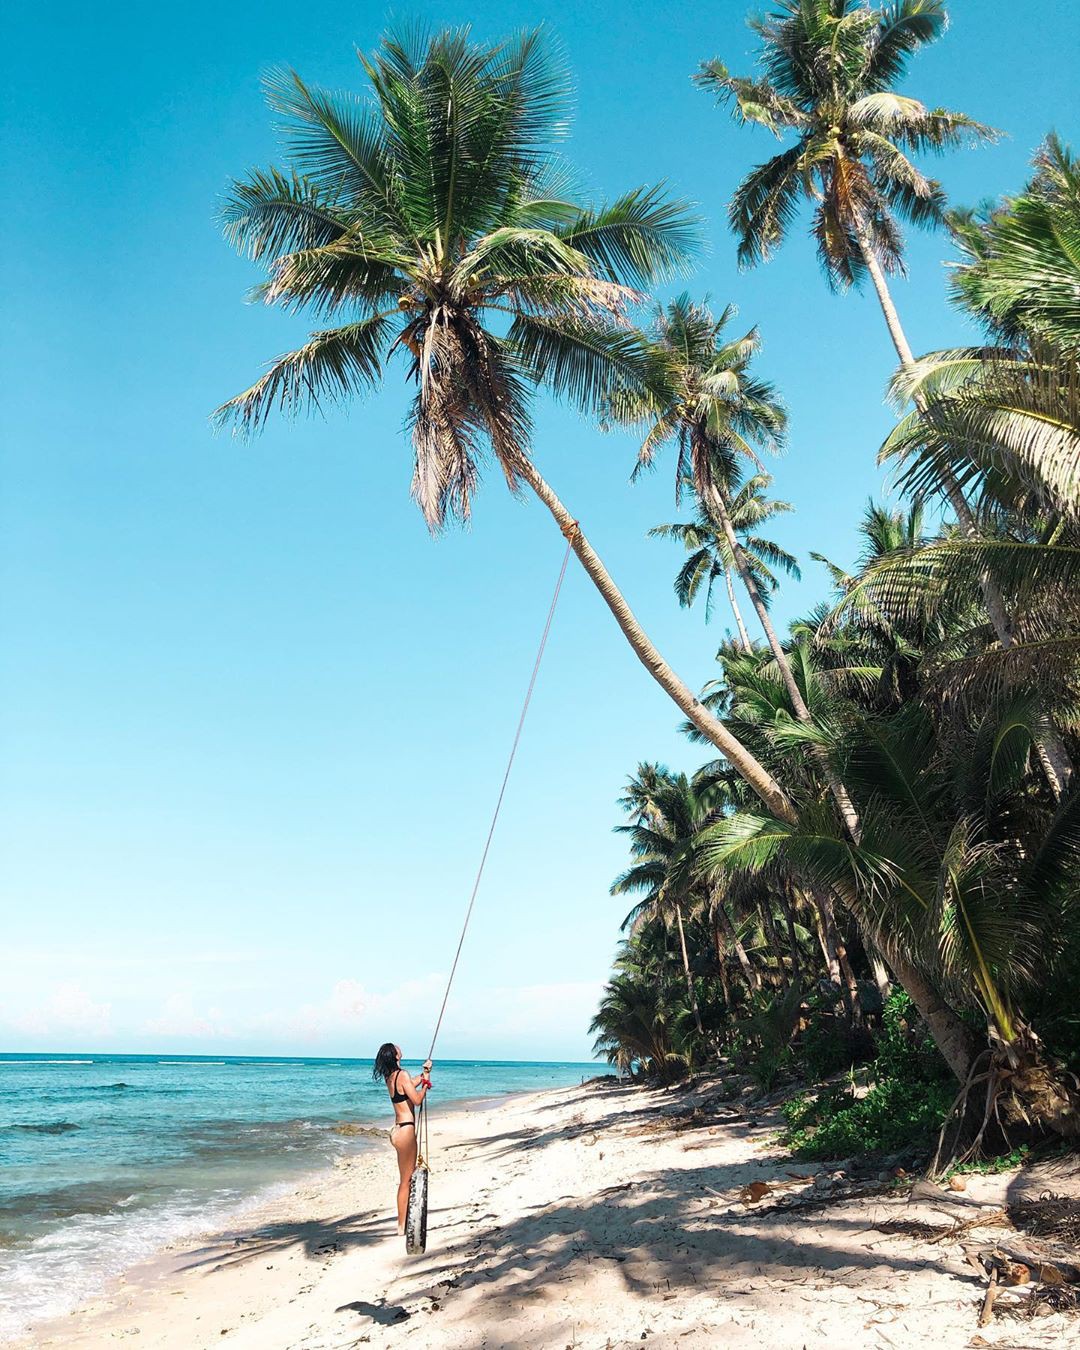 Vượt qua cả Bali và Hawaii, ốc đảo hình giọt nước kỳ lạ ở Philippines được tạp chí Mỹ bình chọn đẹp nhất thế giới - Ảnh 2.